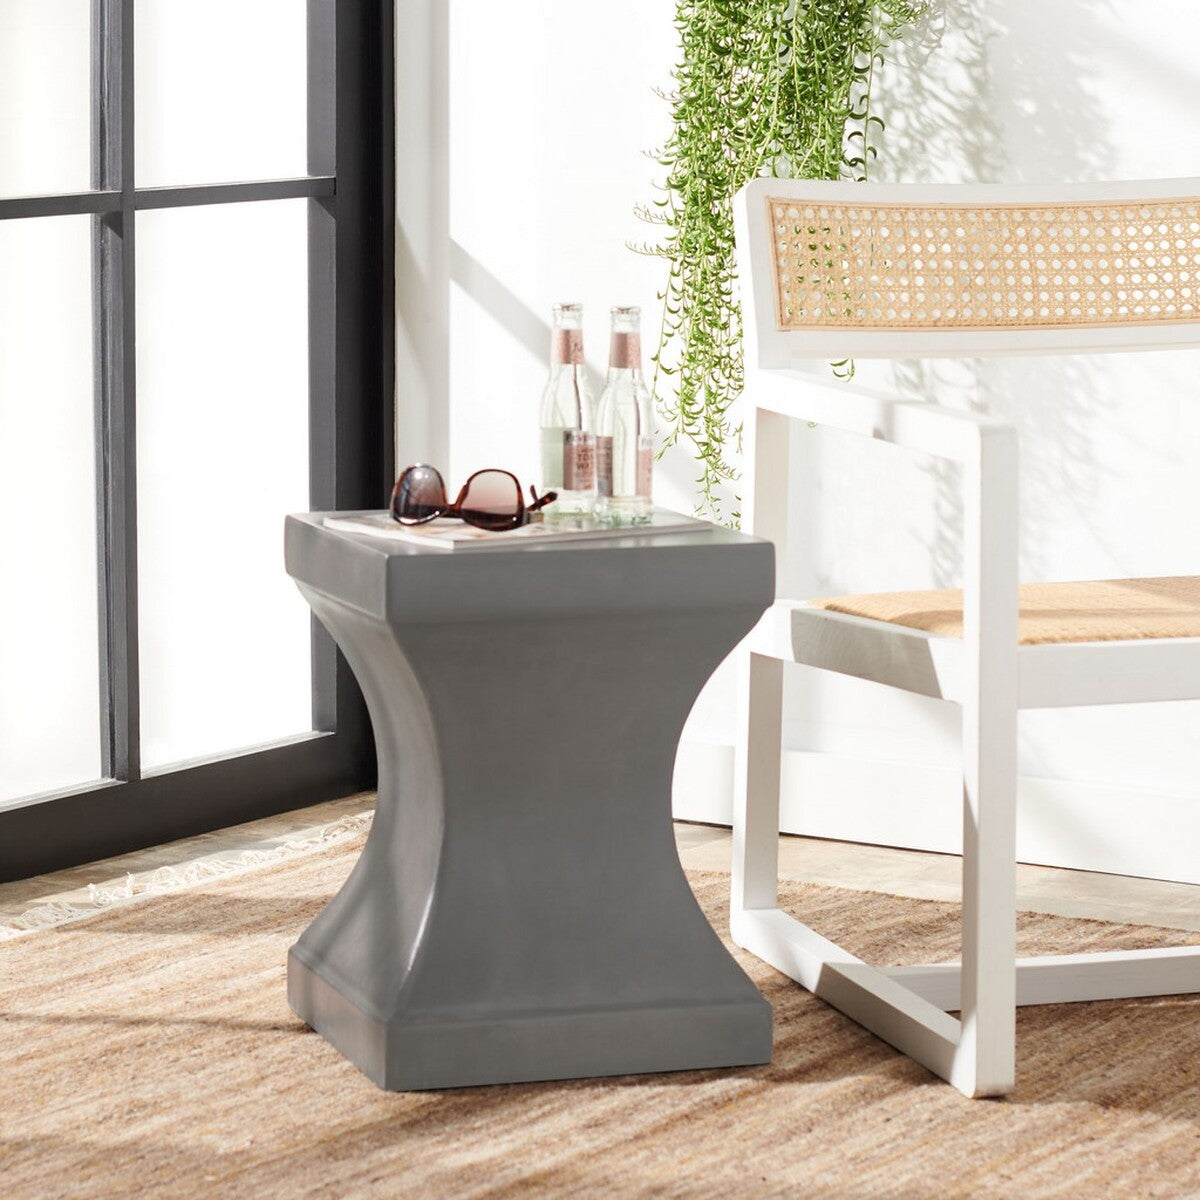 Safavieh Haruki Outdoor Modern Concrete Round Accent Table - Dark Grey